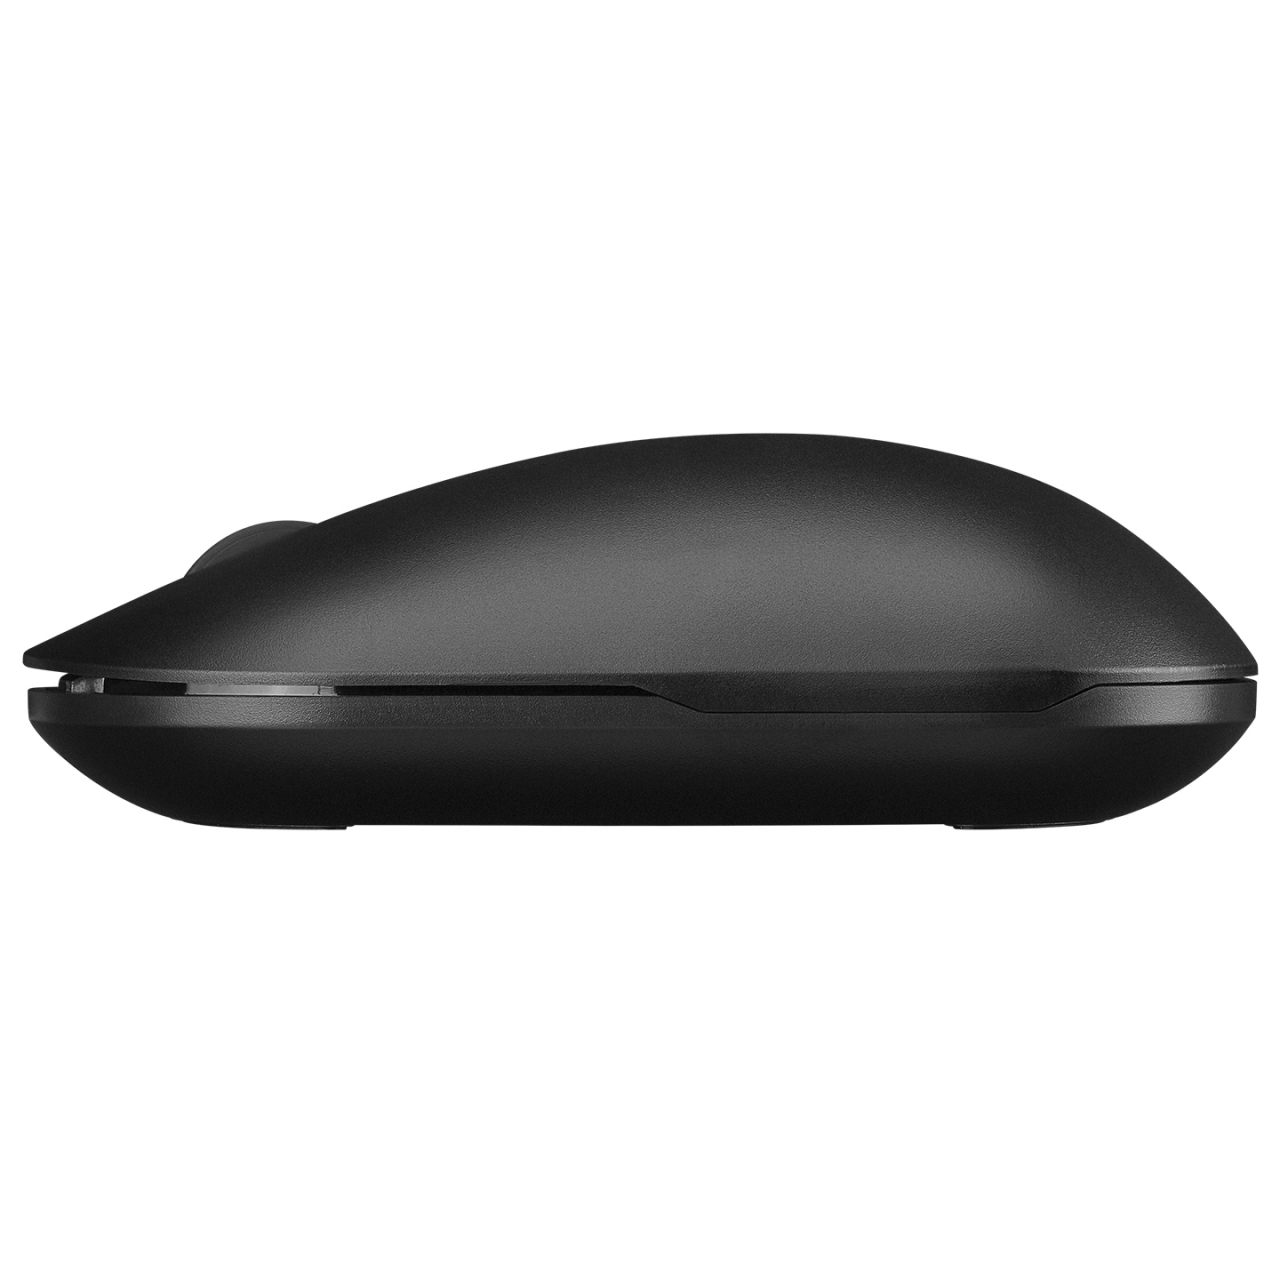 EVEREST SMW-399 Şarj Edilebilir Süper Sessiz 1600 DPI Kablosuz Siyah Mouse